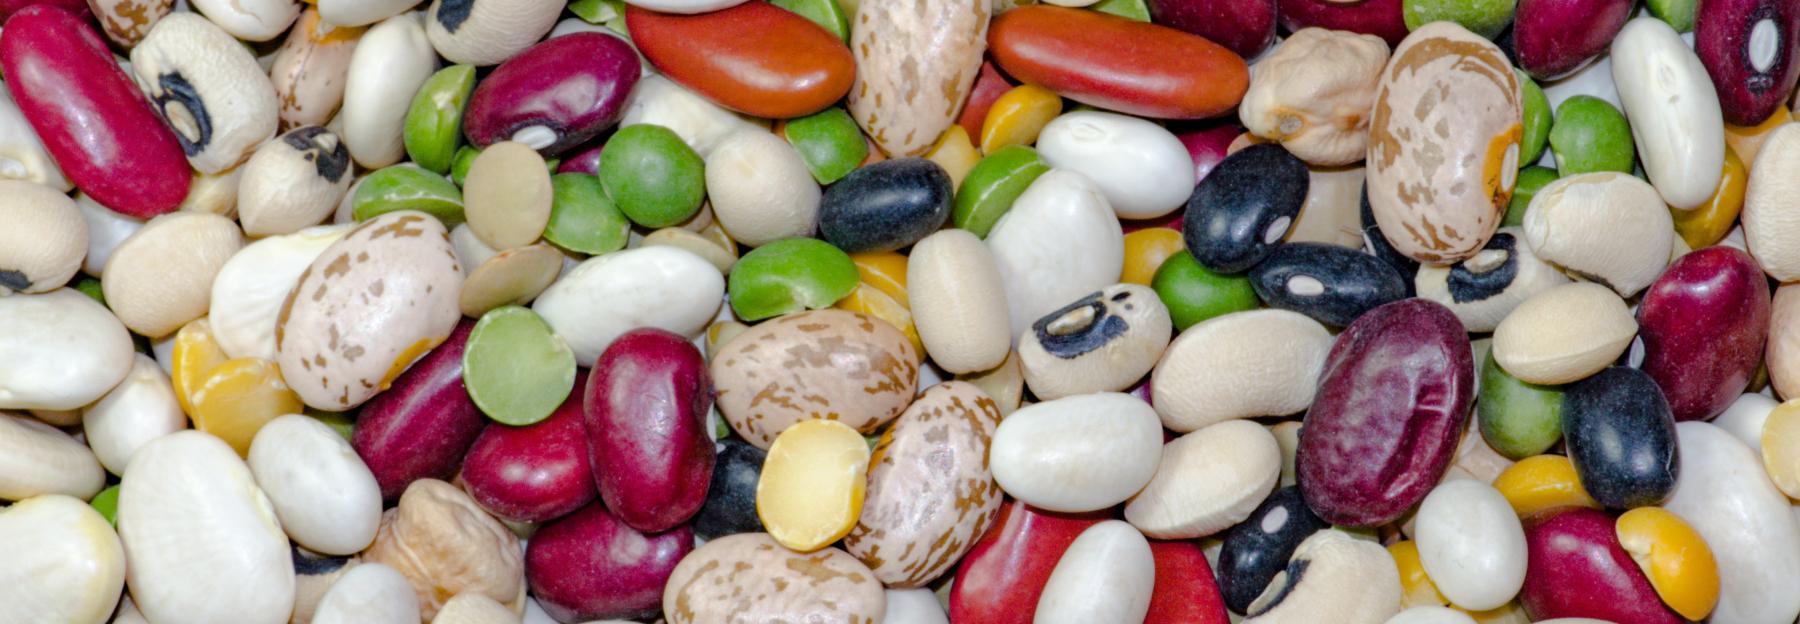 Mischung verschiedener Samen von Hülsenfrüchtlern, Bohnen, Erbsen in den Farben weiß, grün, schwarz, dunkelrot und gelb